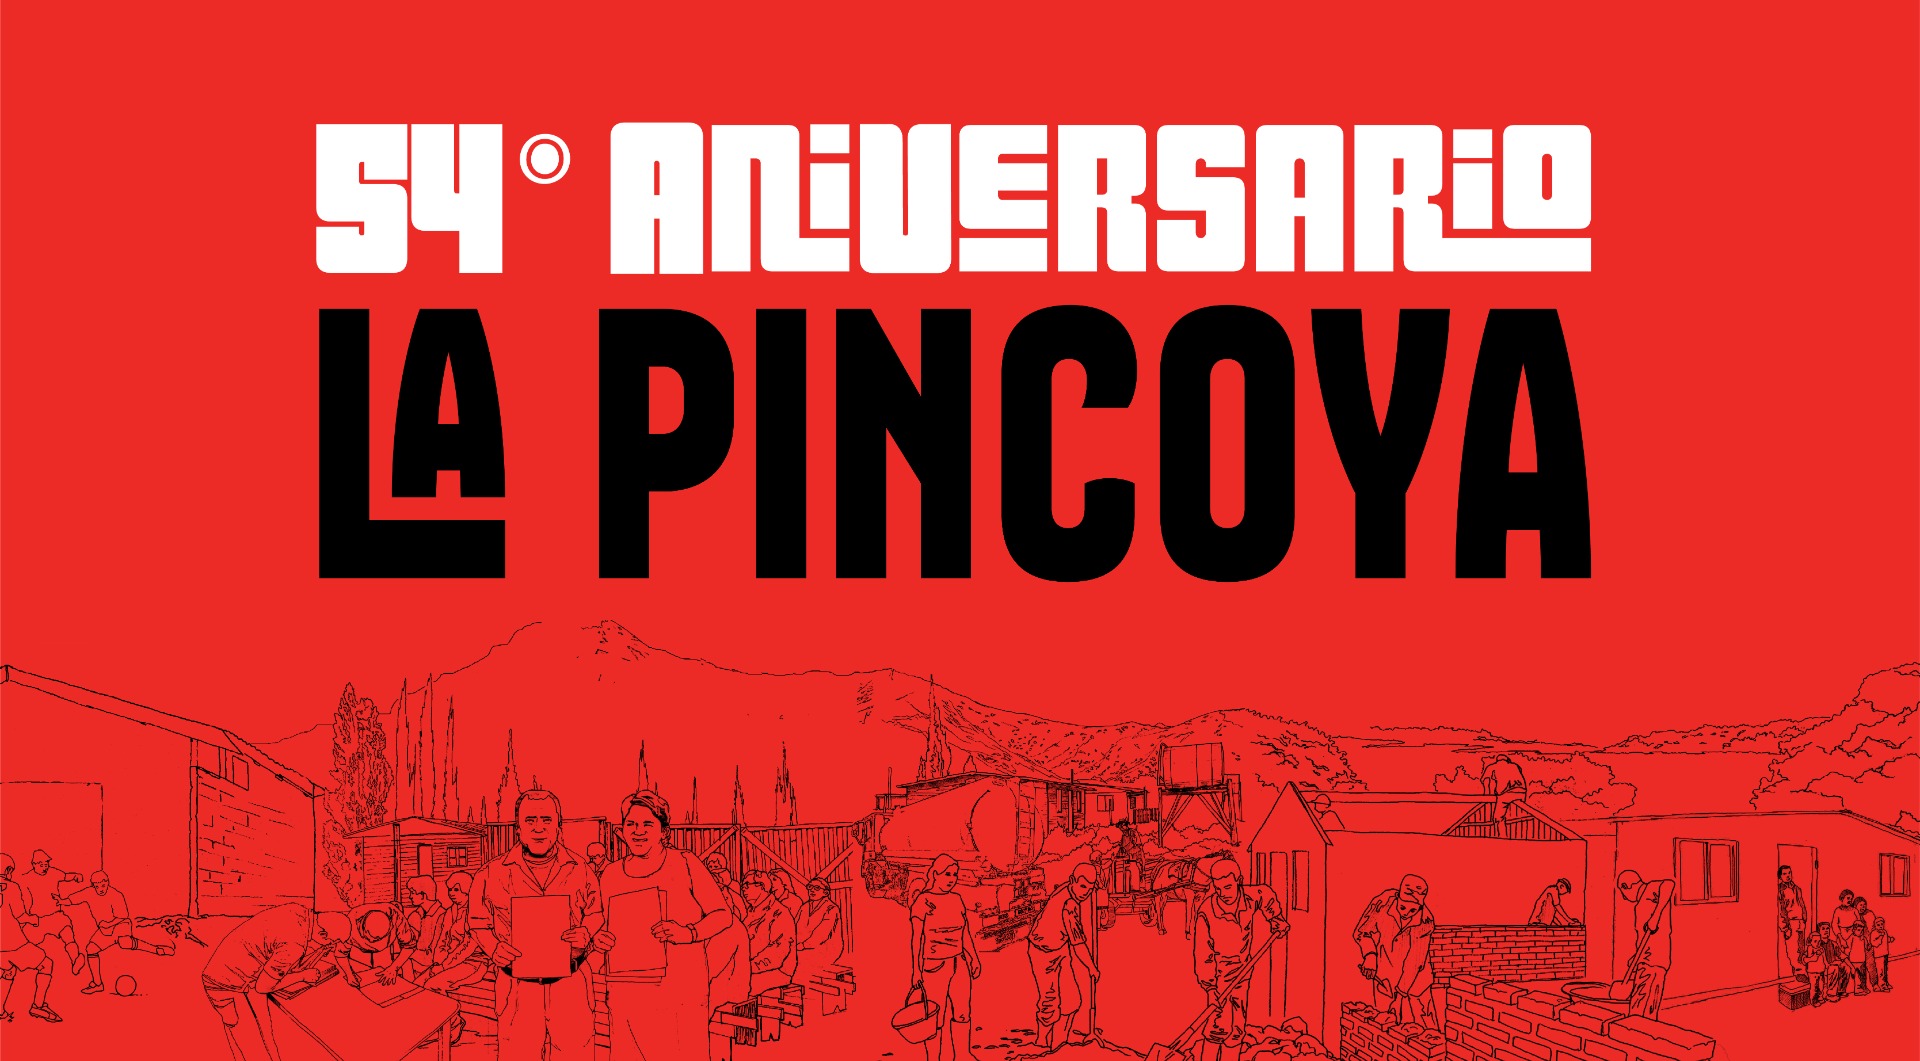 54 Aniversario La Pincoya